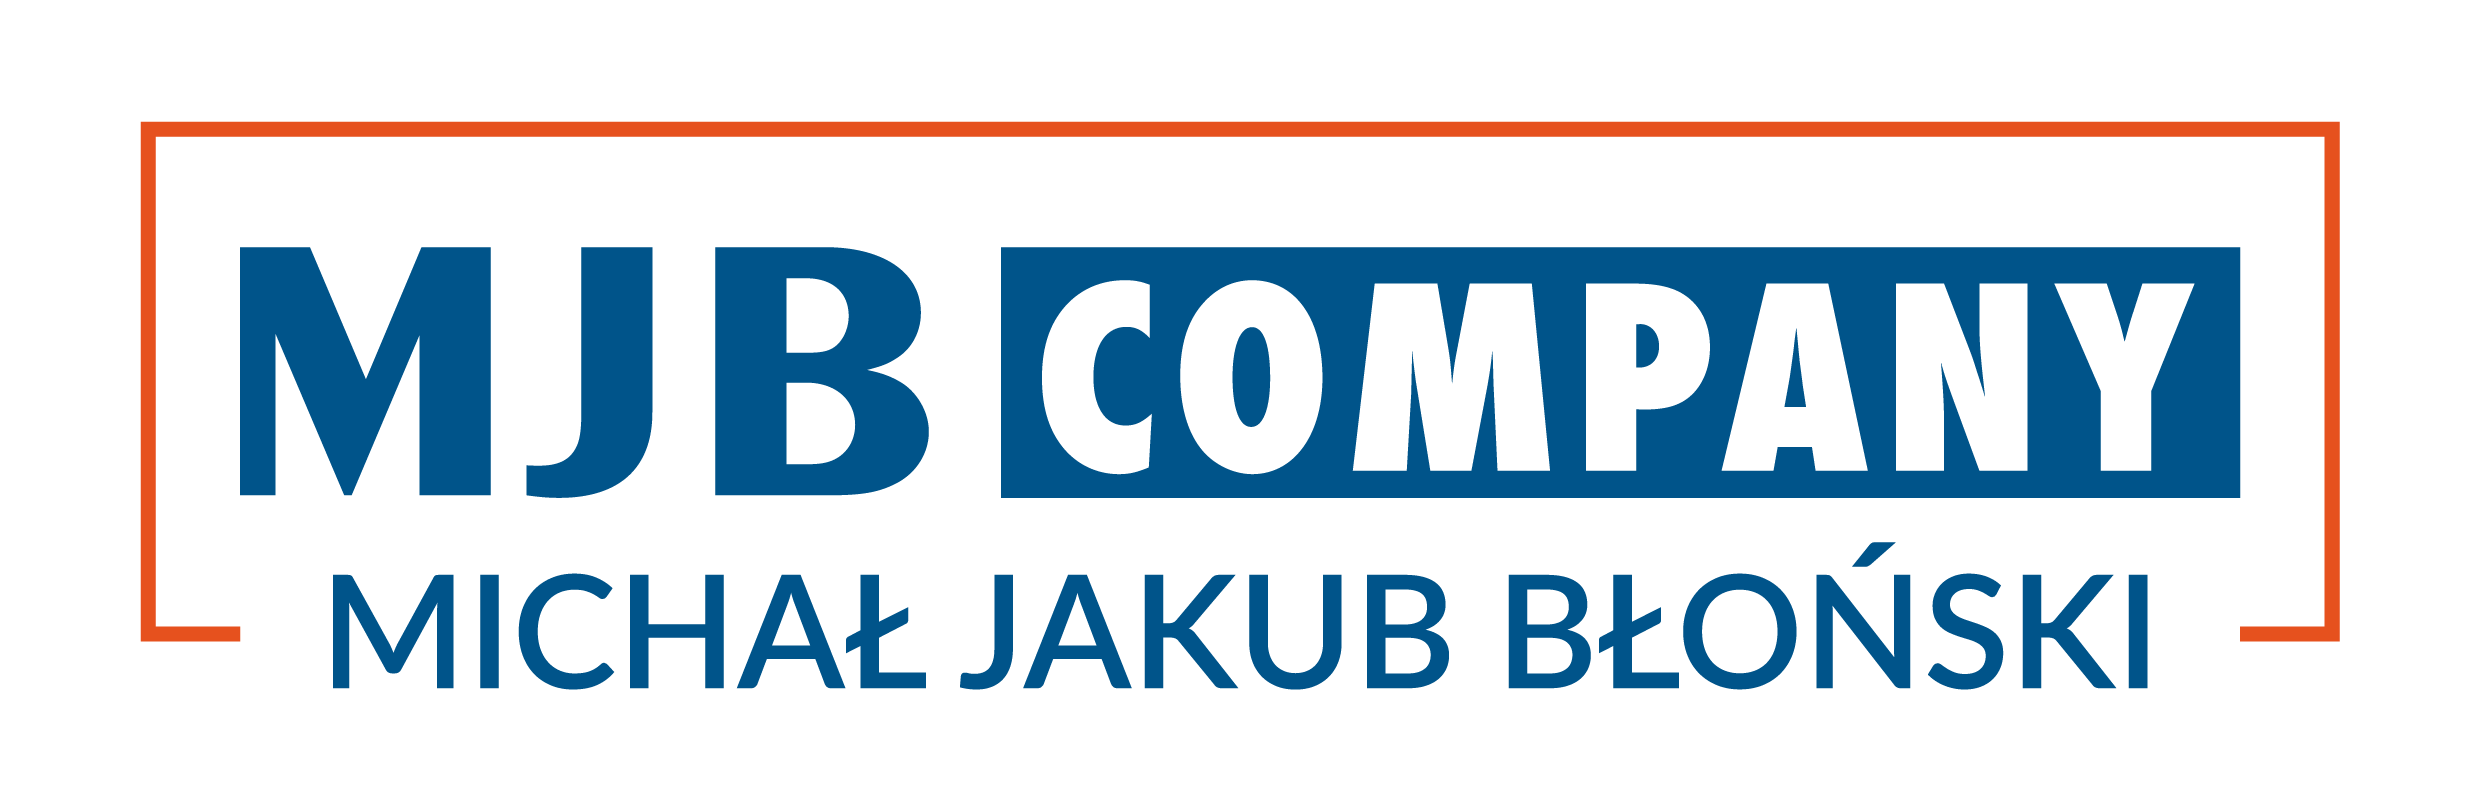 Tanie bilety od MJB COMPANY Michał Jakub Błoński